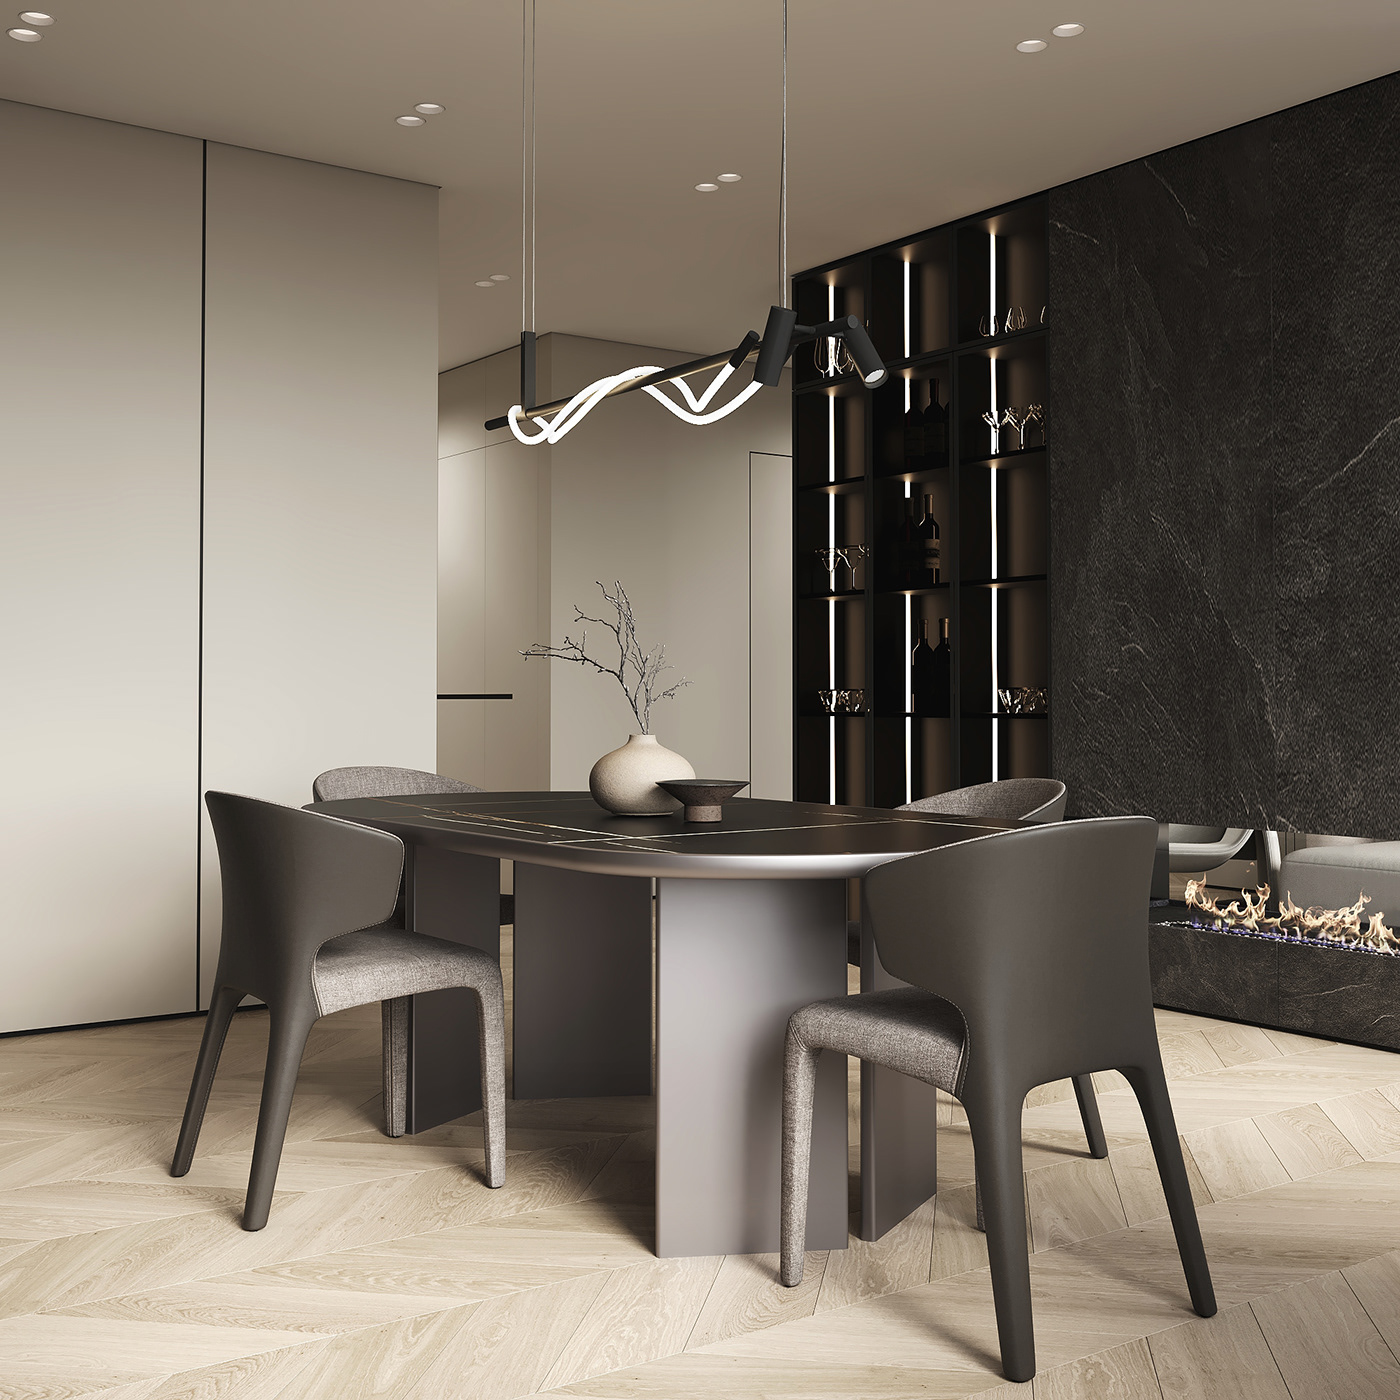 design kitchen design visualization 3ds max Render interior design  modern corona CGI archviz